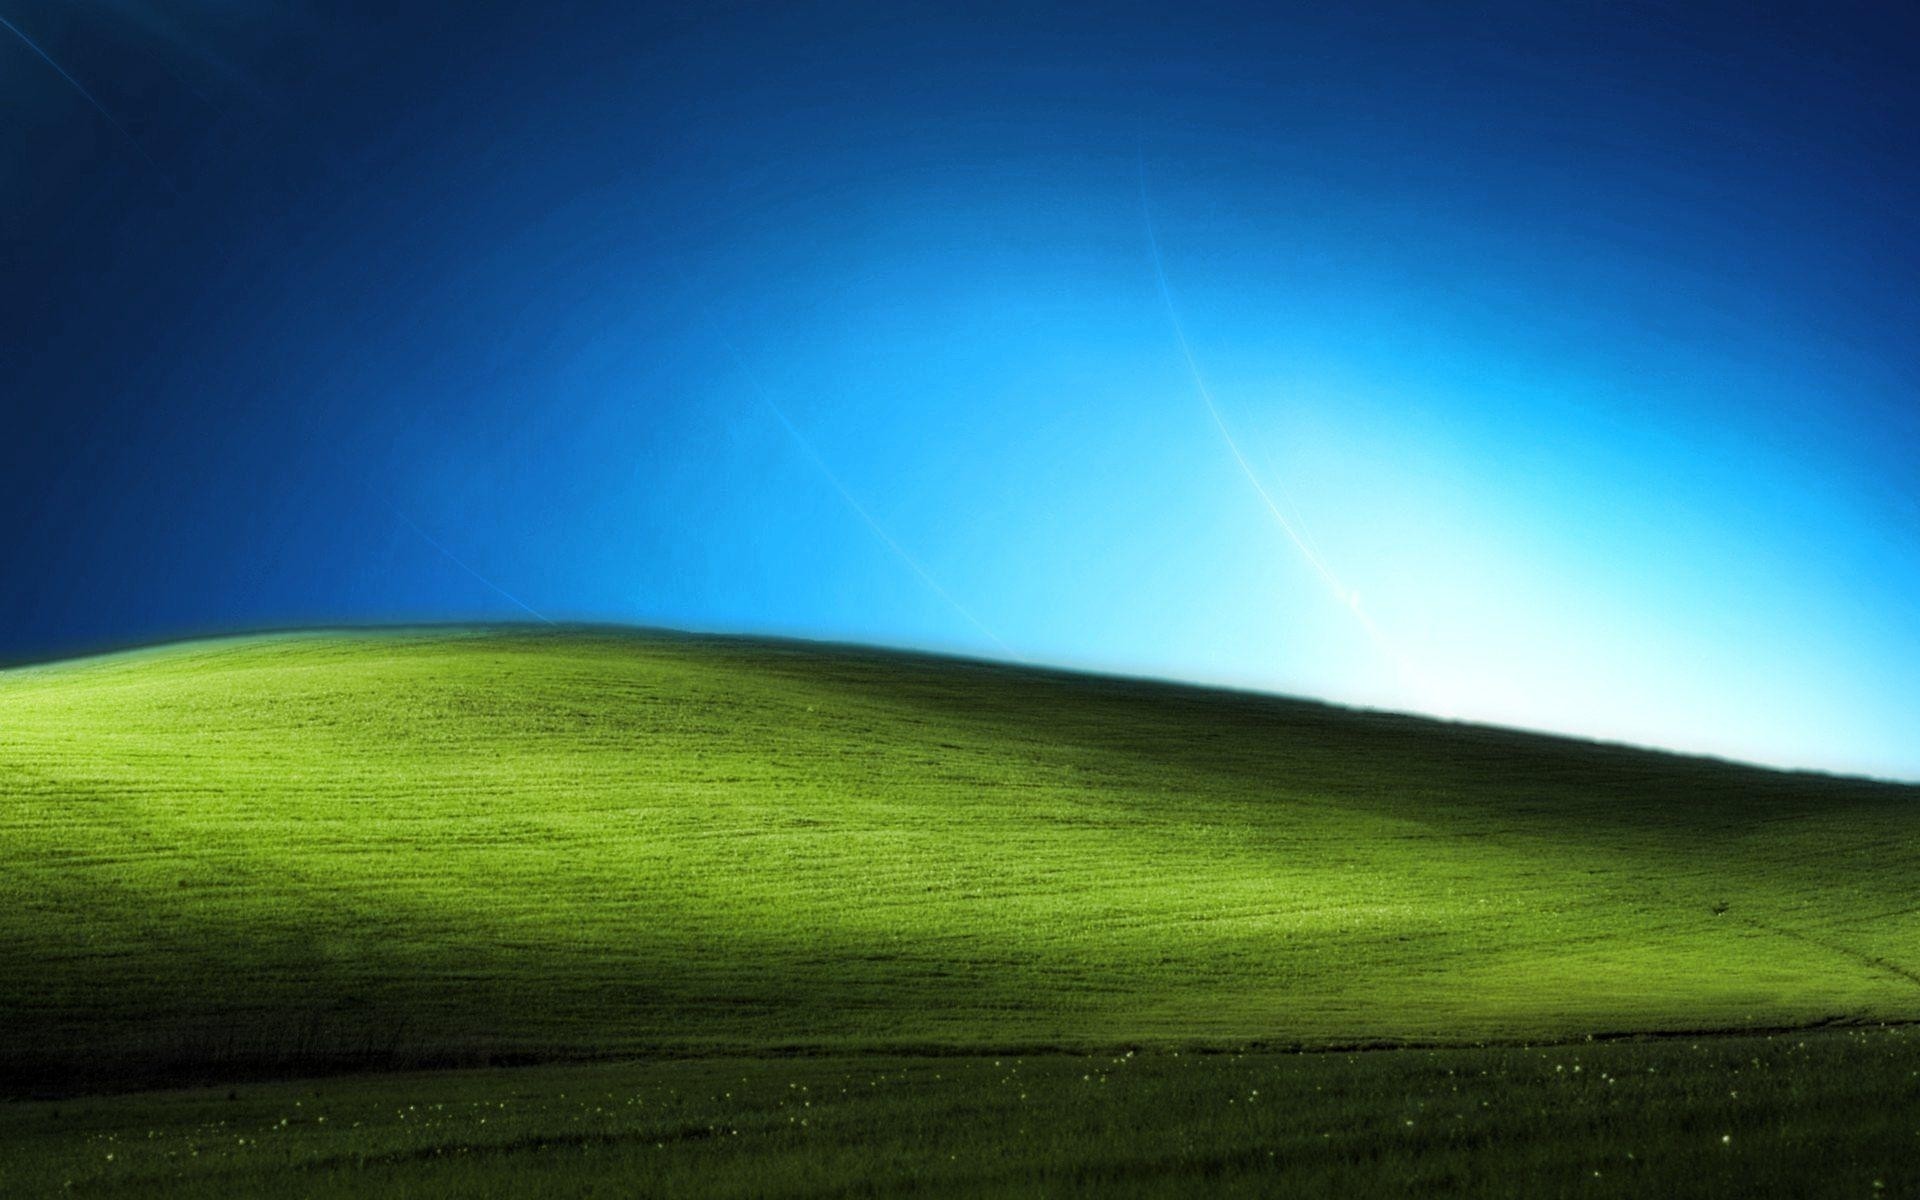 Hình nền  hình minh họa Chủ nghĩa tối giản Windows XP Hạnh phúc Đồng  cỏ môi trường tự nhiên Hệ sinh thái 2560x1440  UberLost  119751  Hình  nền đẹp hd  WallHere